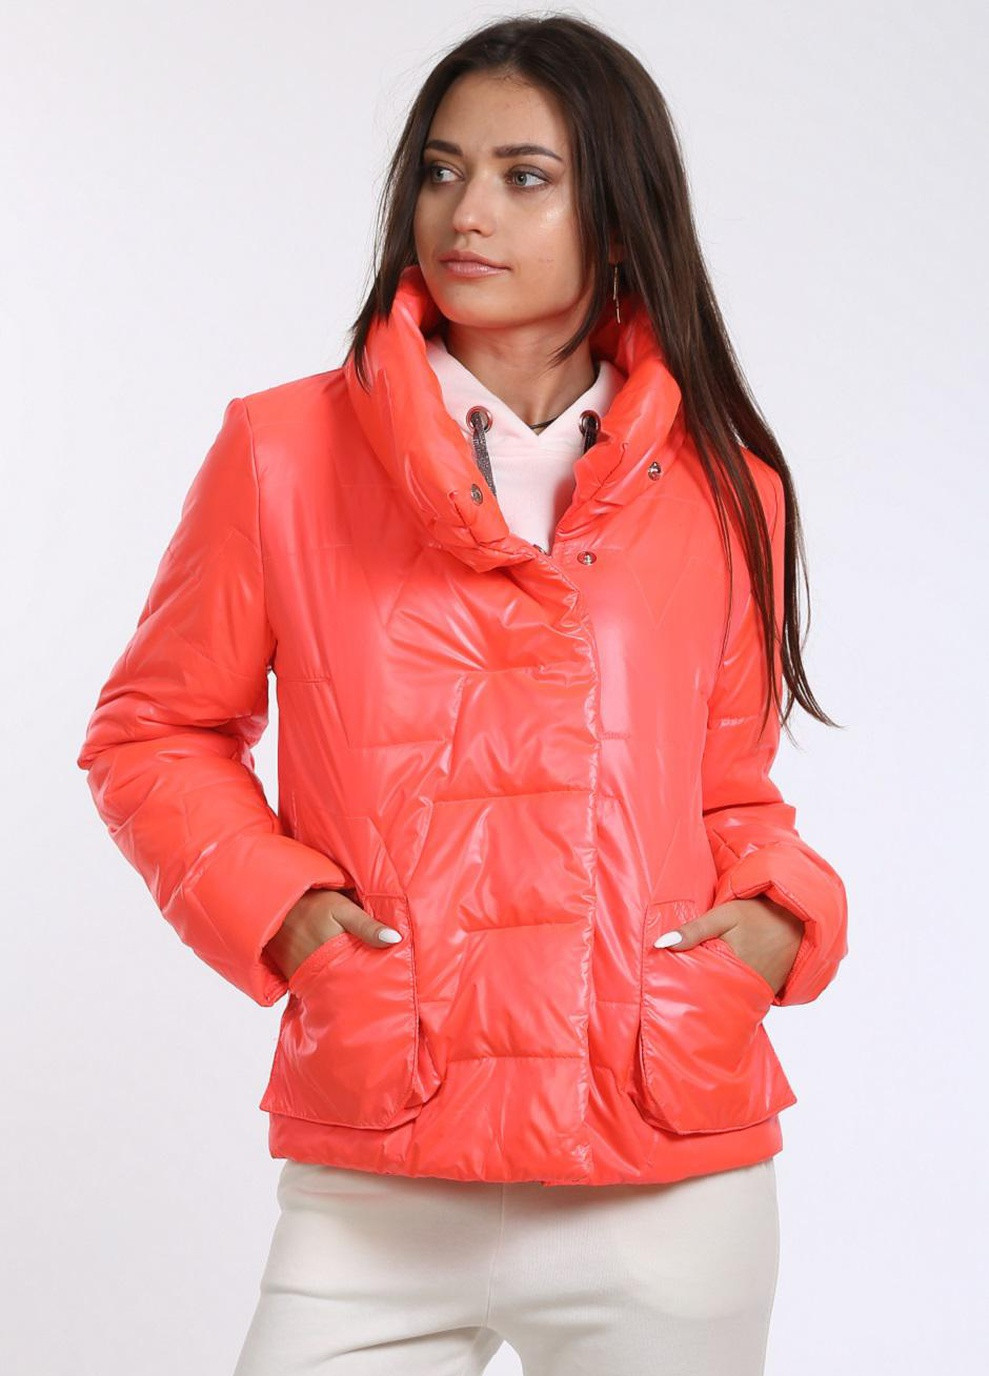 Рожева куртка короткая женская 327 плащевка розовая Актуаль